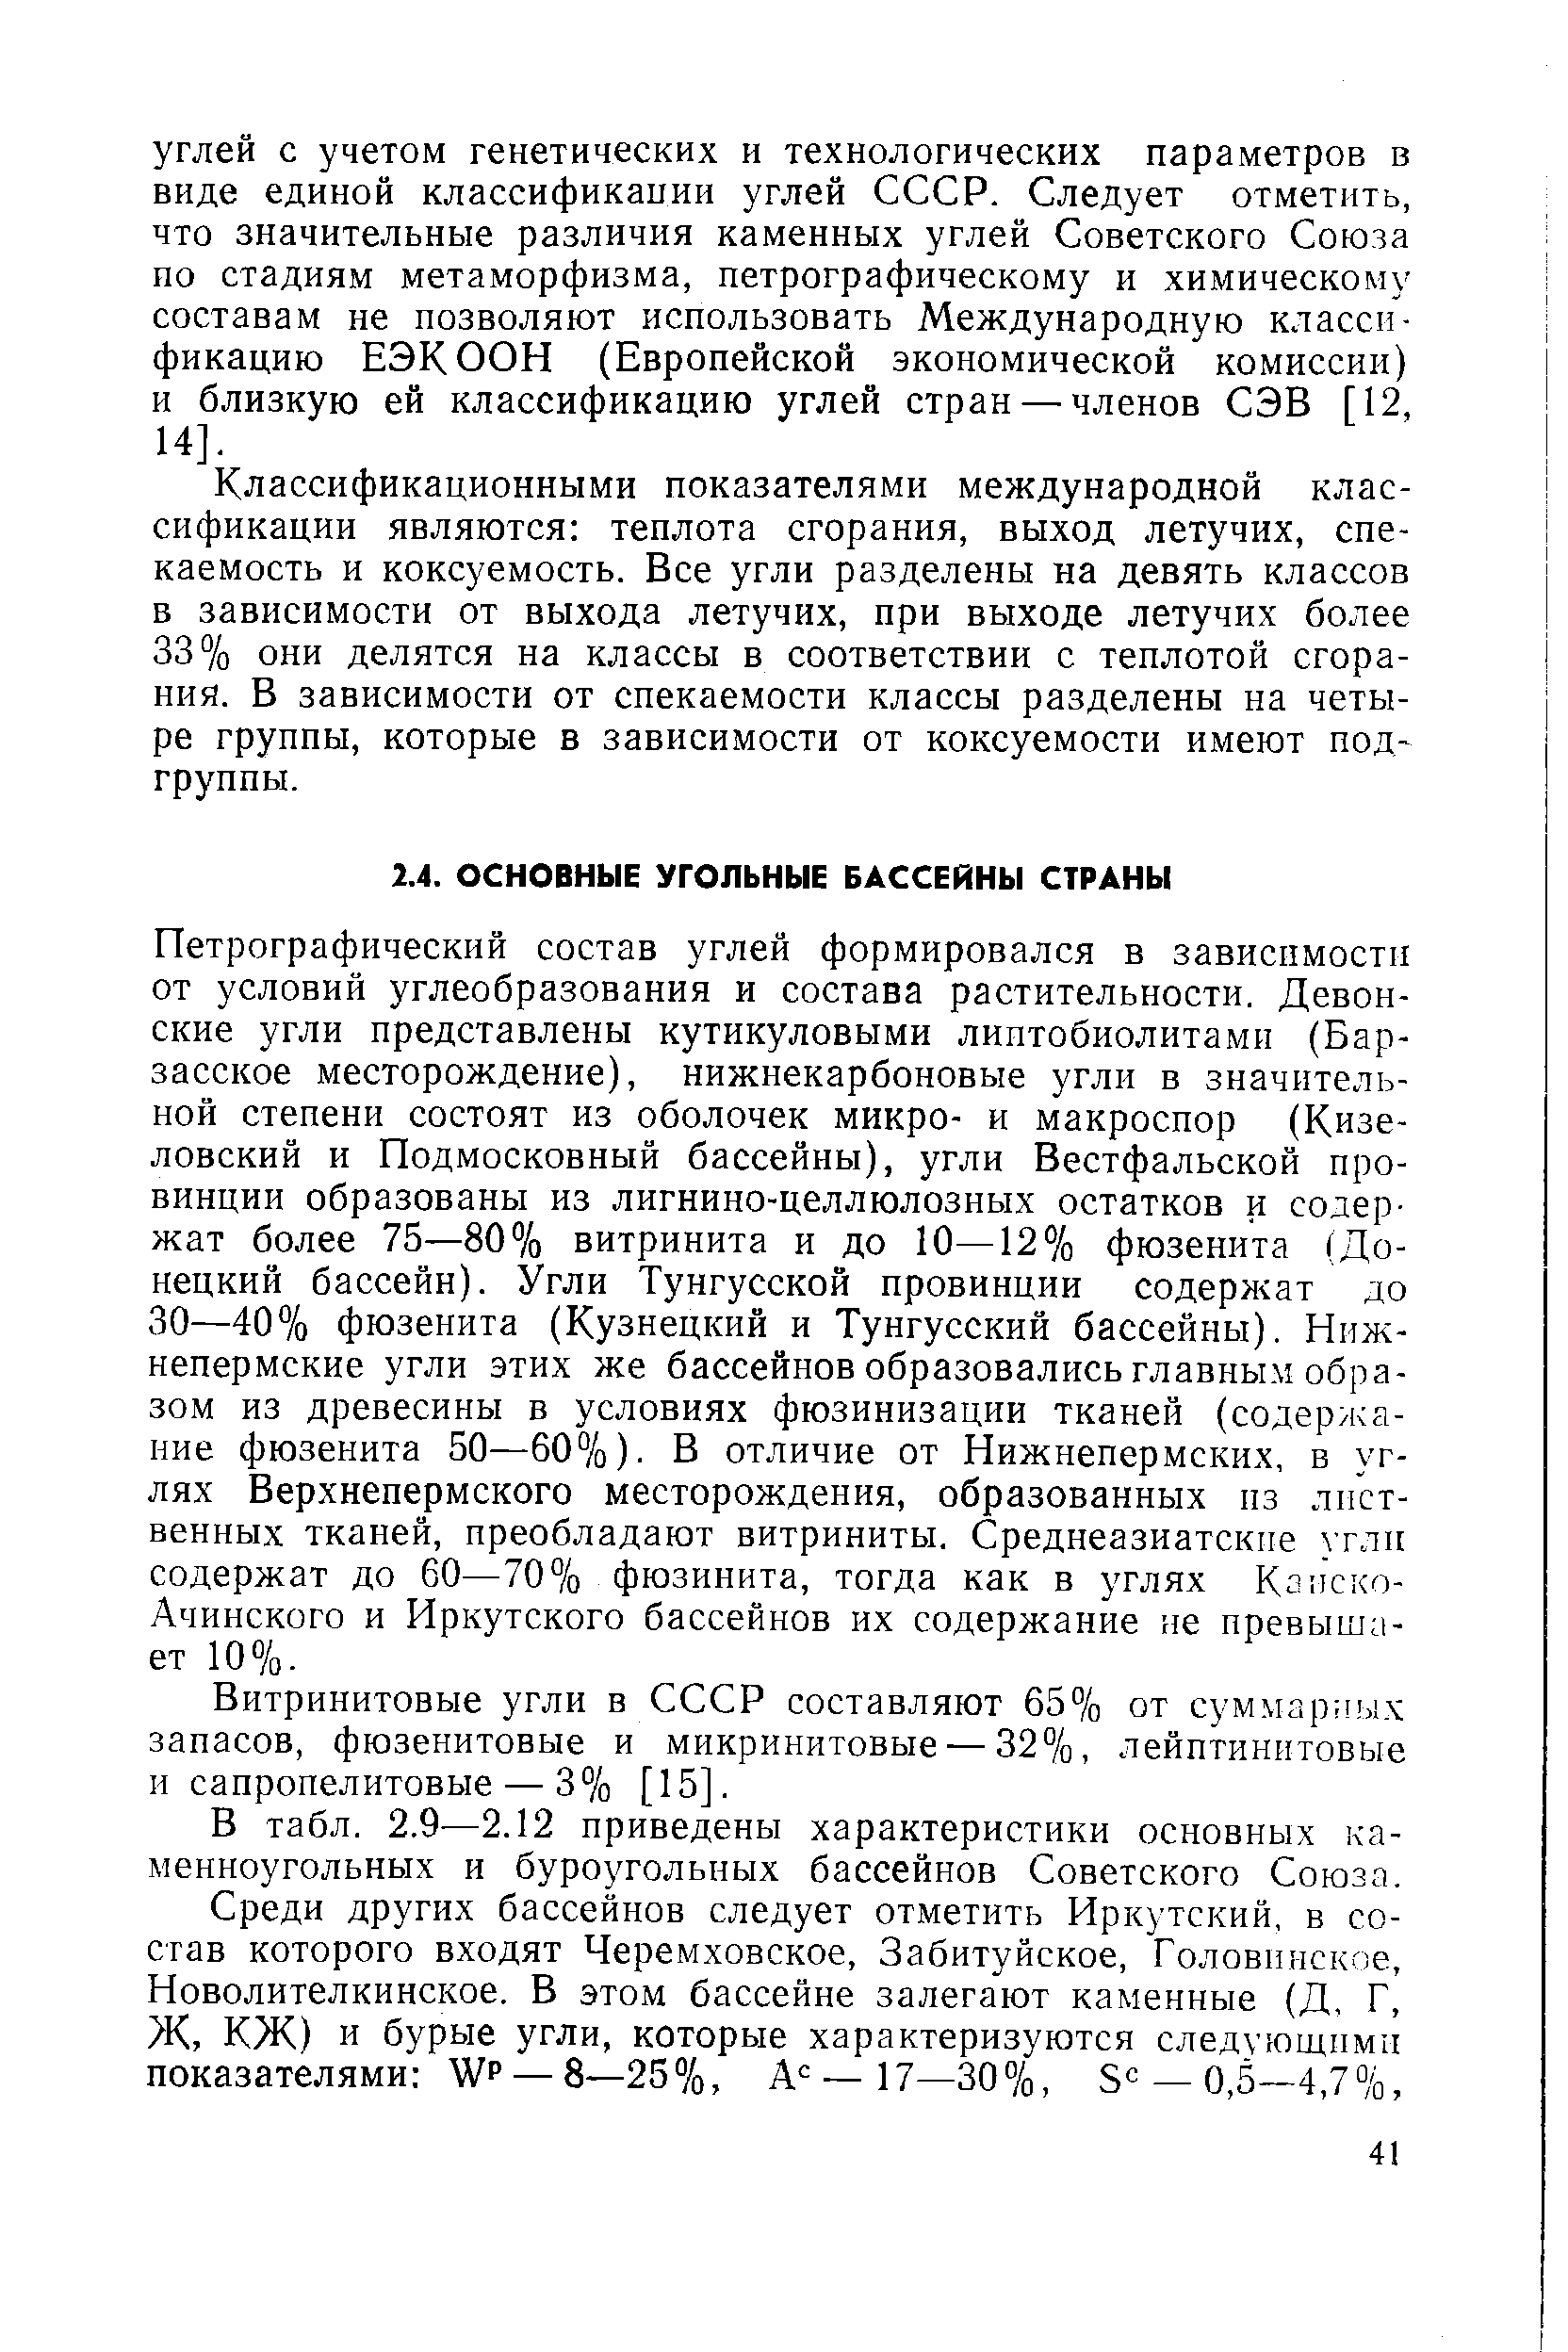 В табл. 2.9—2.12 приведены характеристики основных каменноугольных и буроугольных бассейнов Советского Союза.